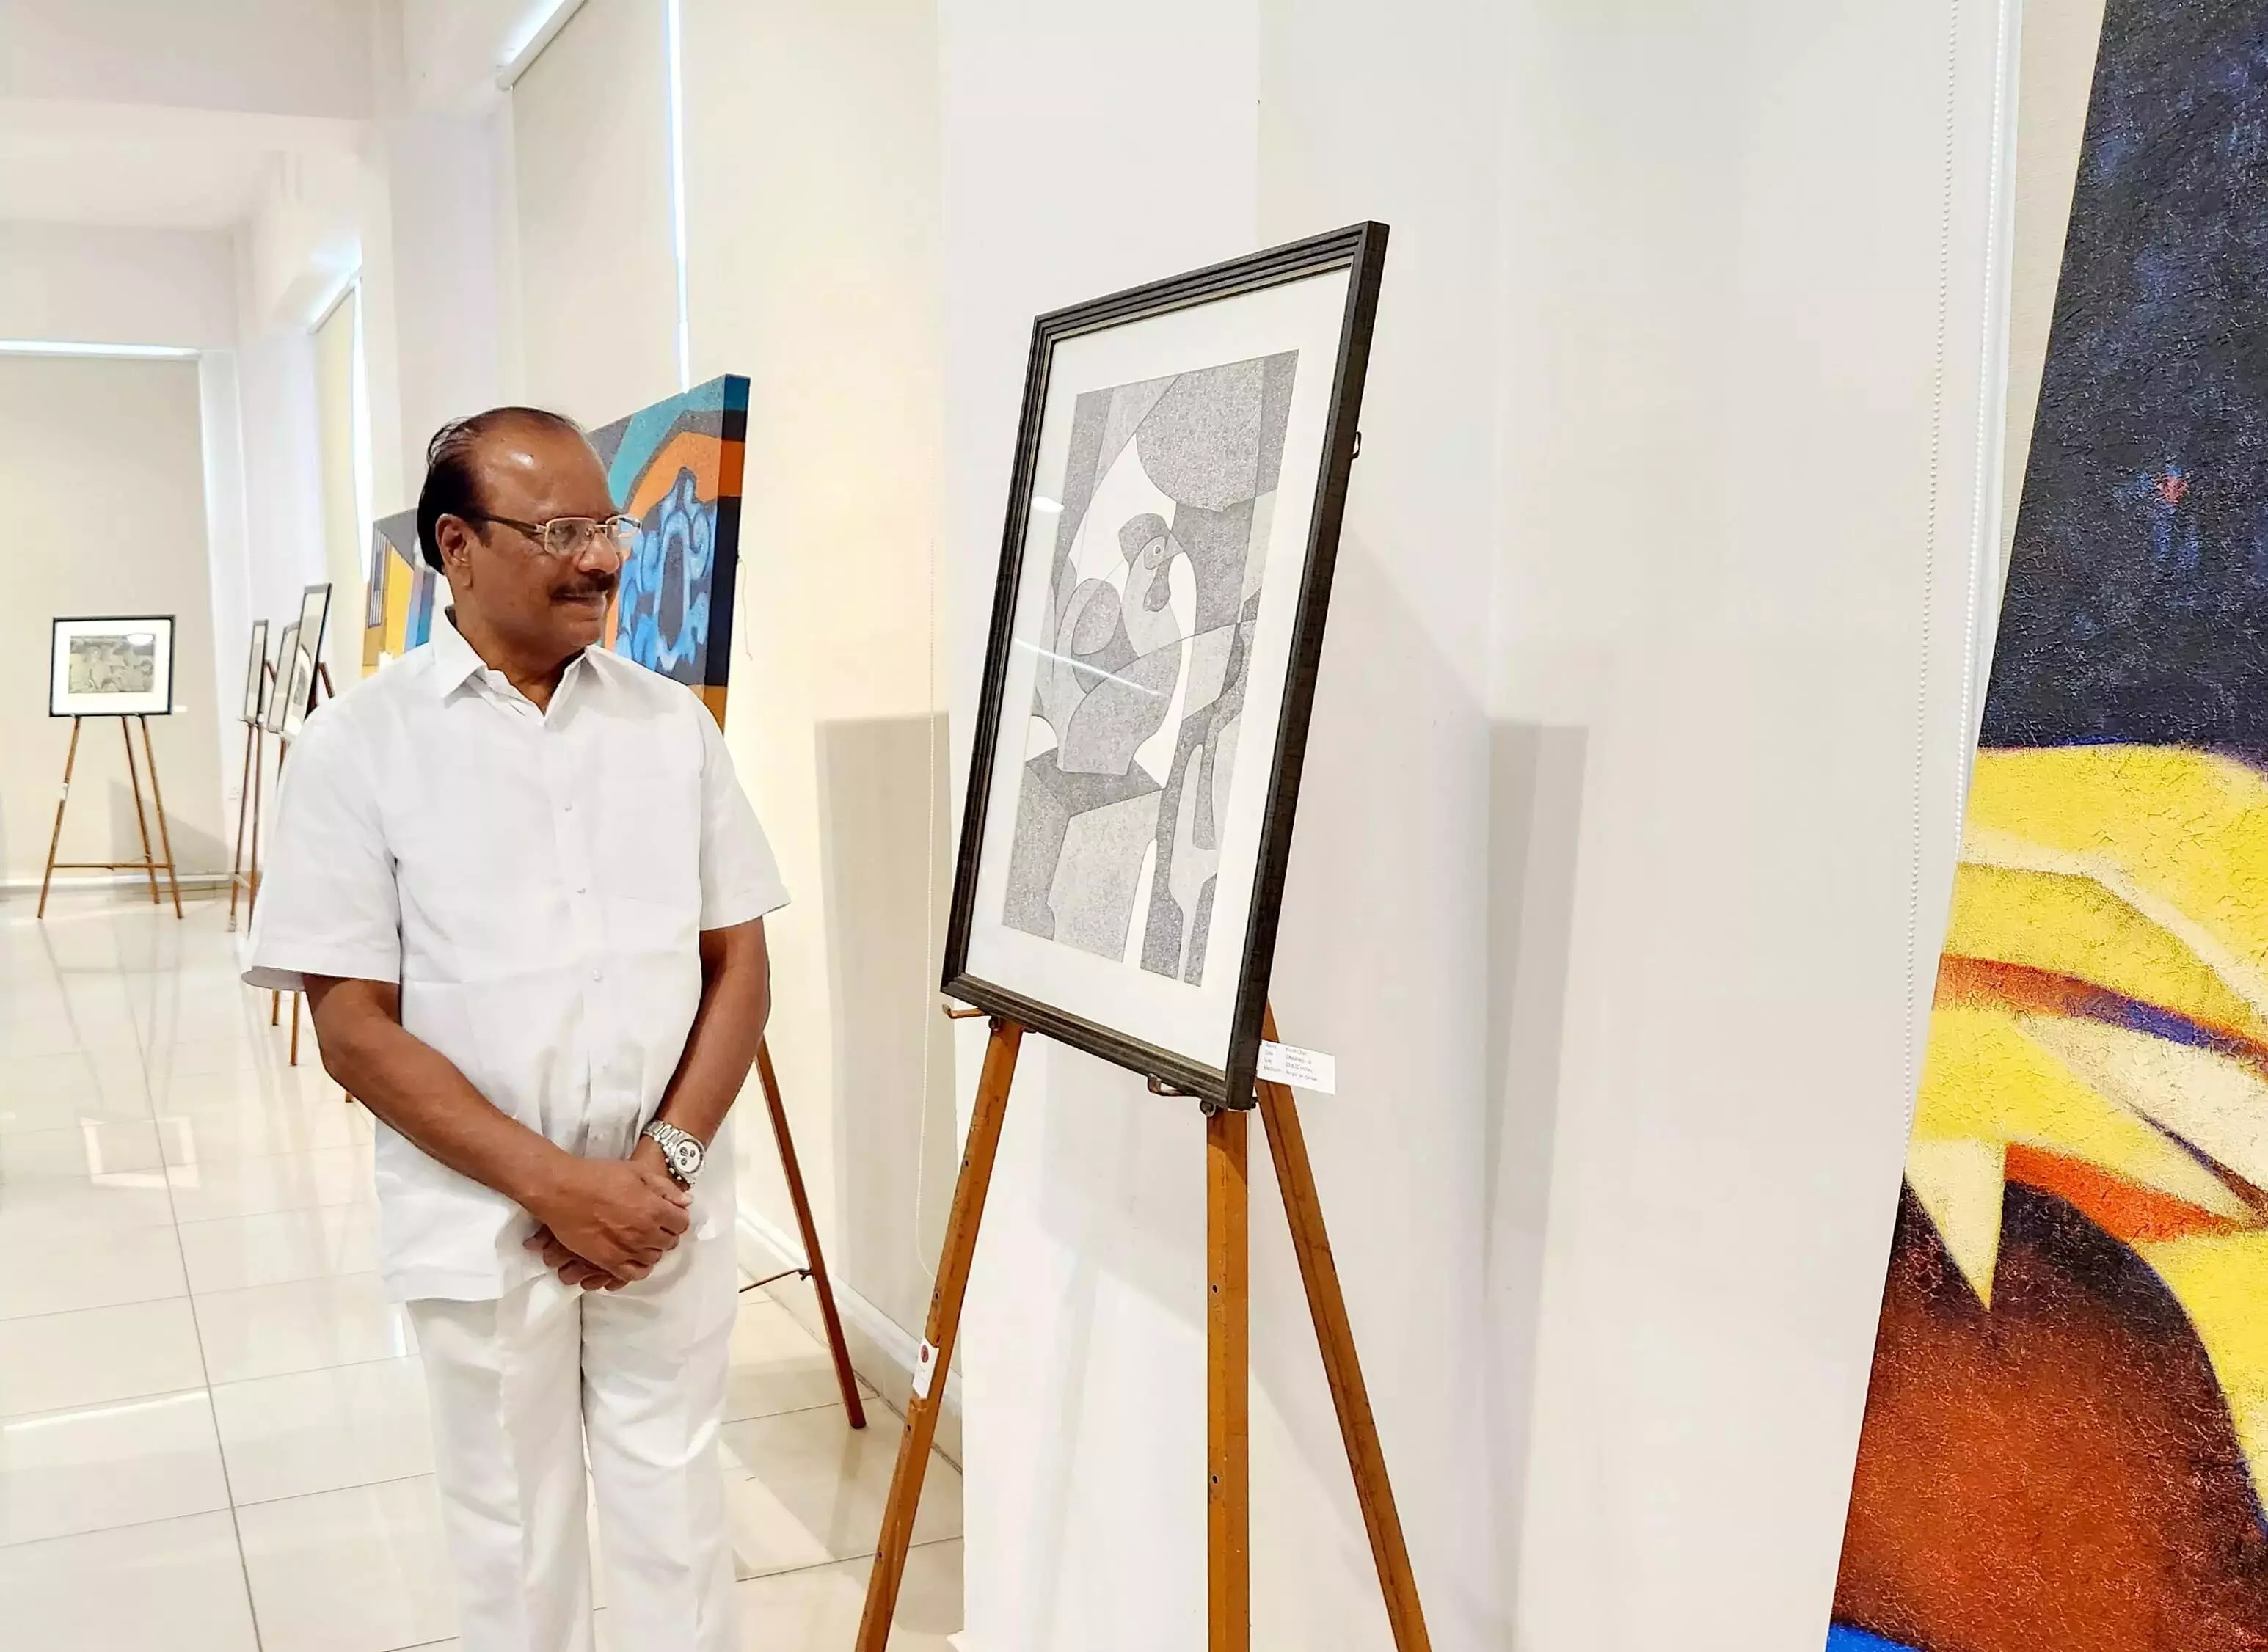 त्रिपुरा के राज्यपाल इंद्रसेन रेड्डी ने स्पेक्ट्रम कला प्रदर्शनी का उद्घाटन किया